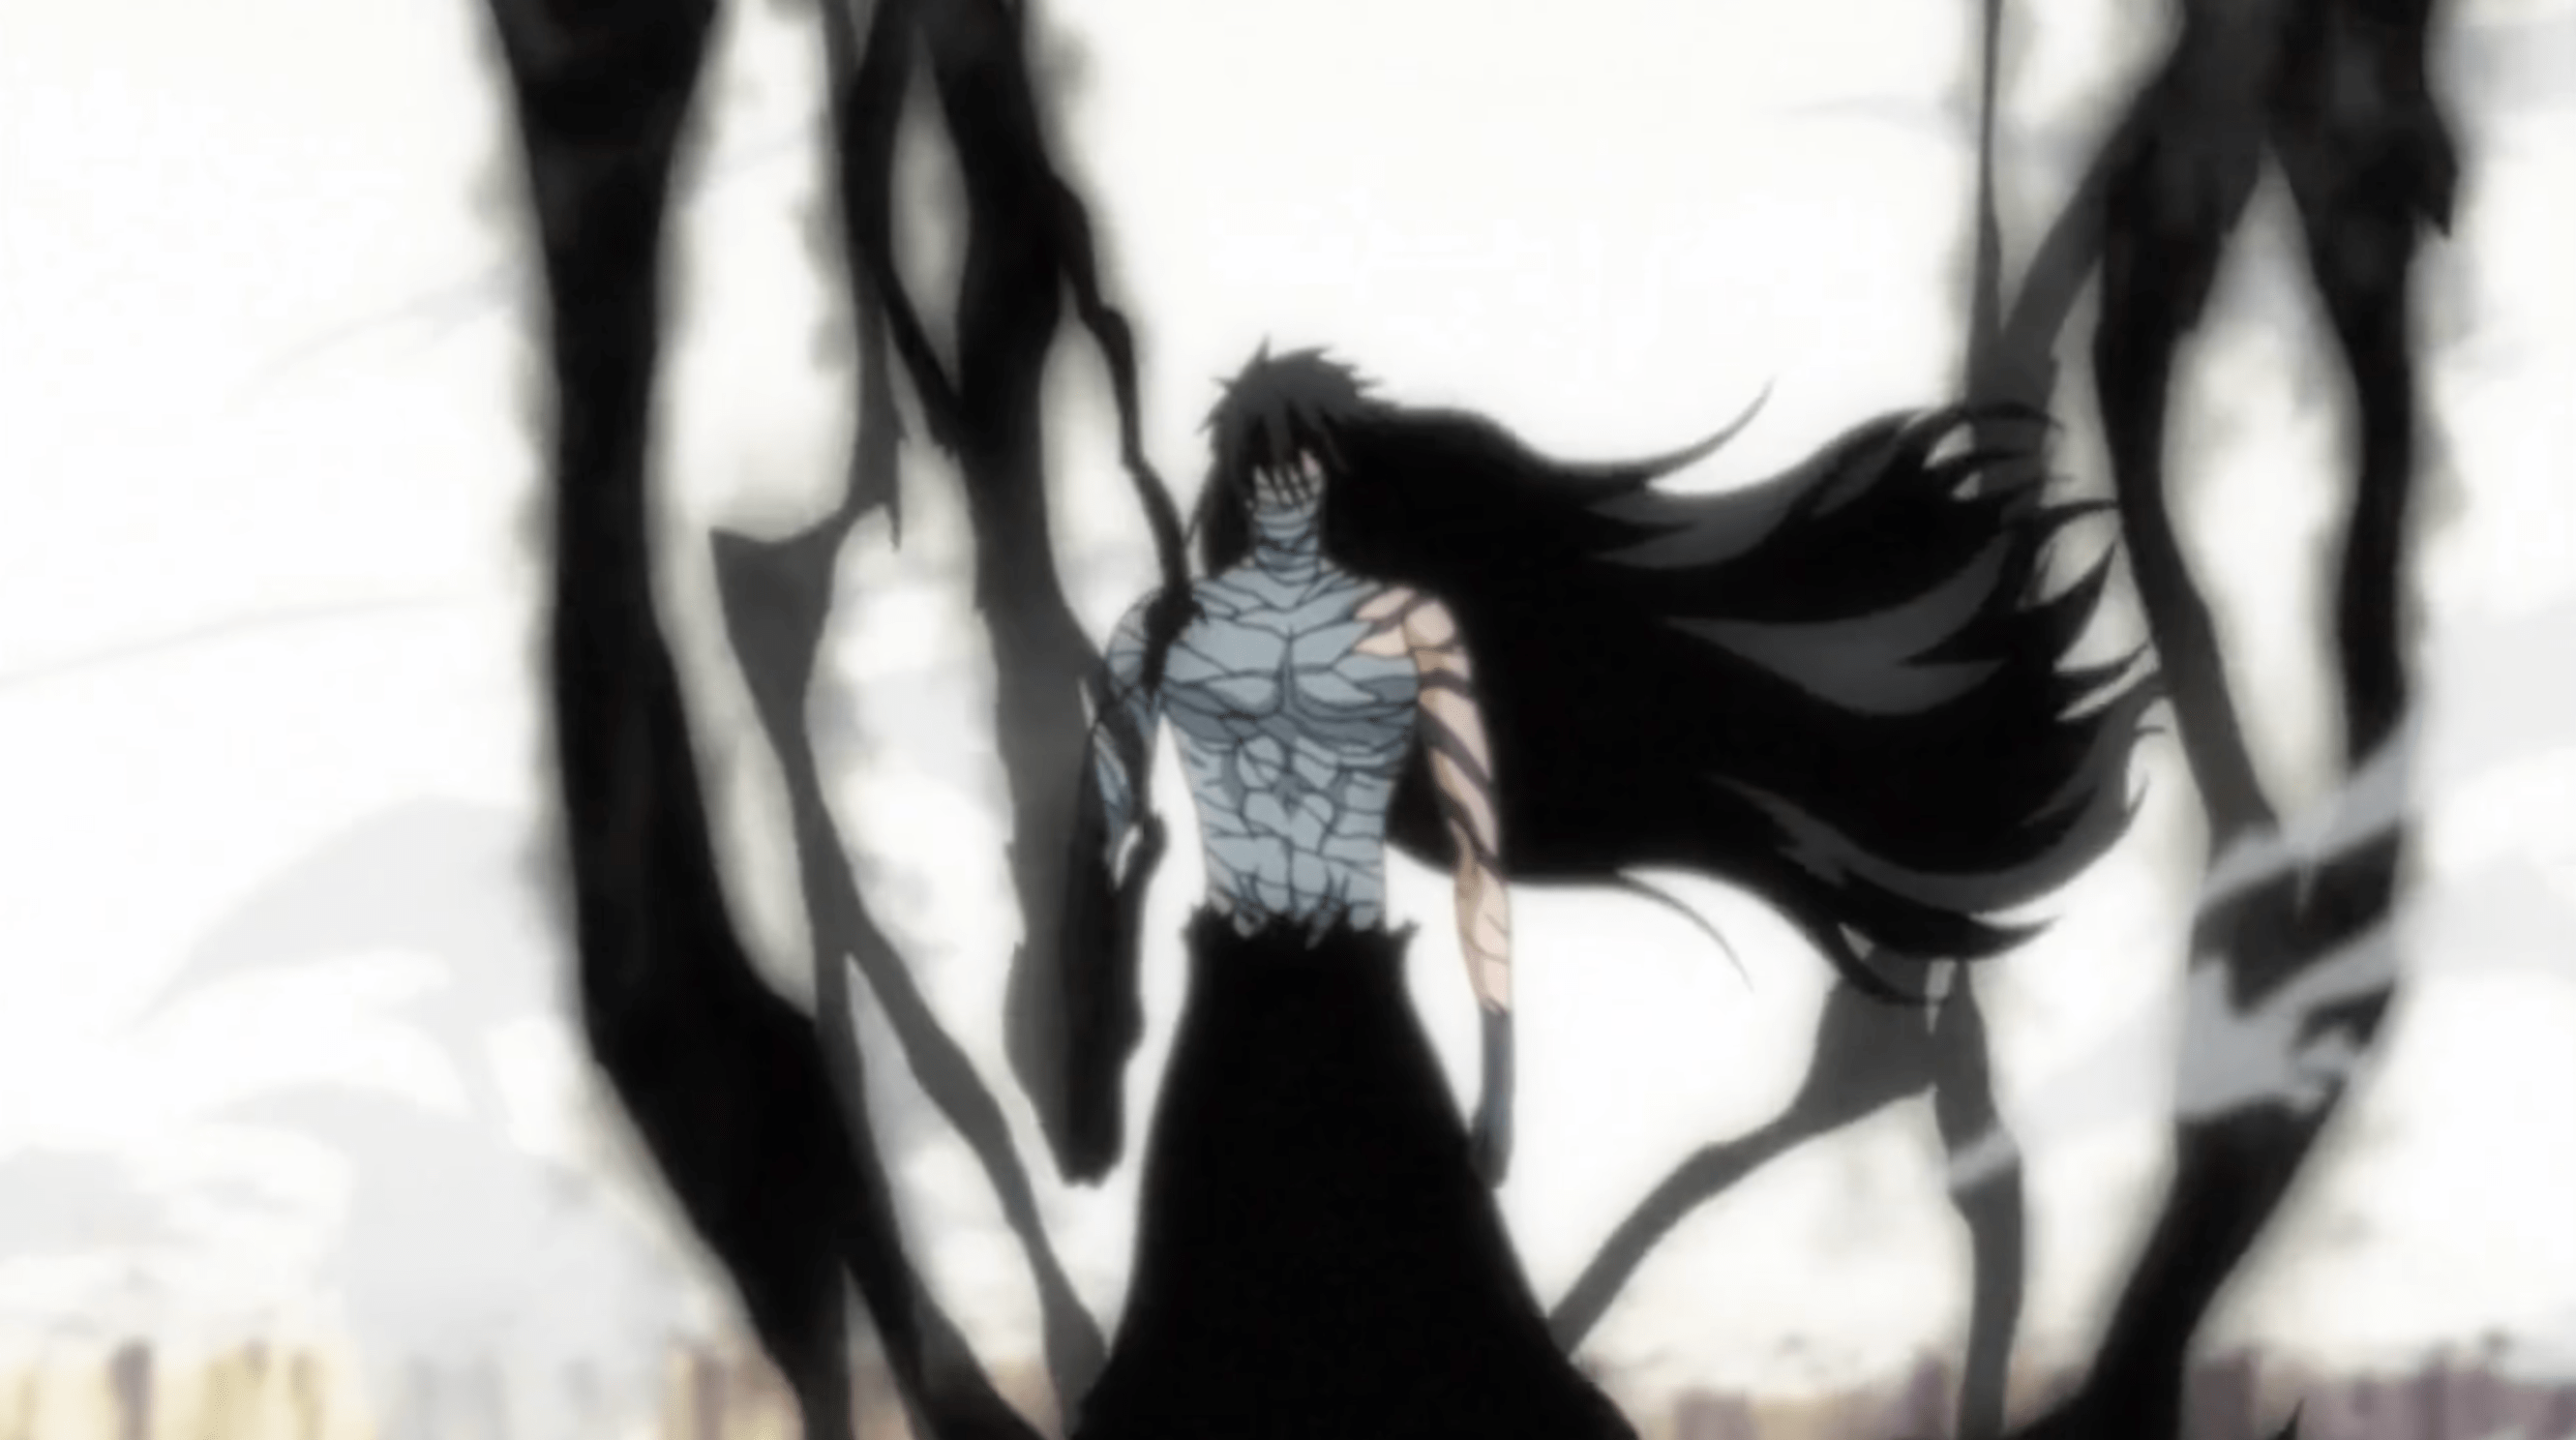 What's The Name And Powers Of Ichigo Kurosaki's Zanpakuto In 'Bleach?'